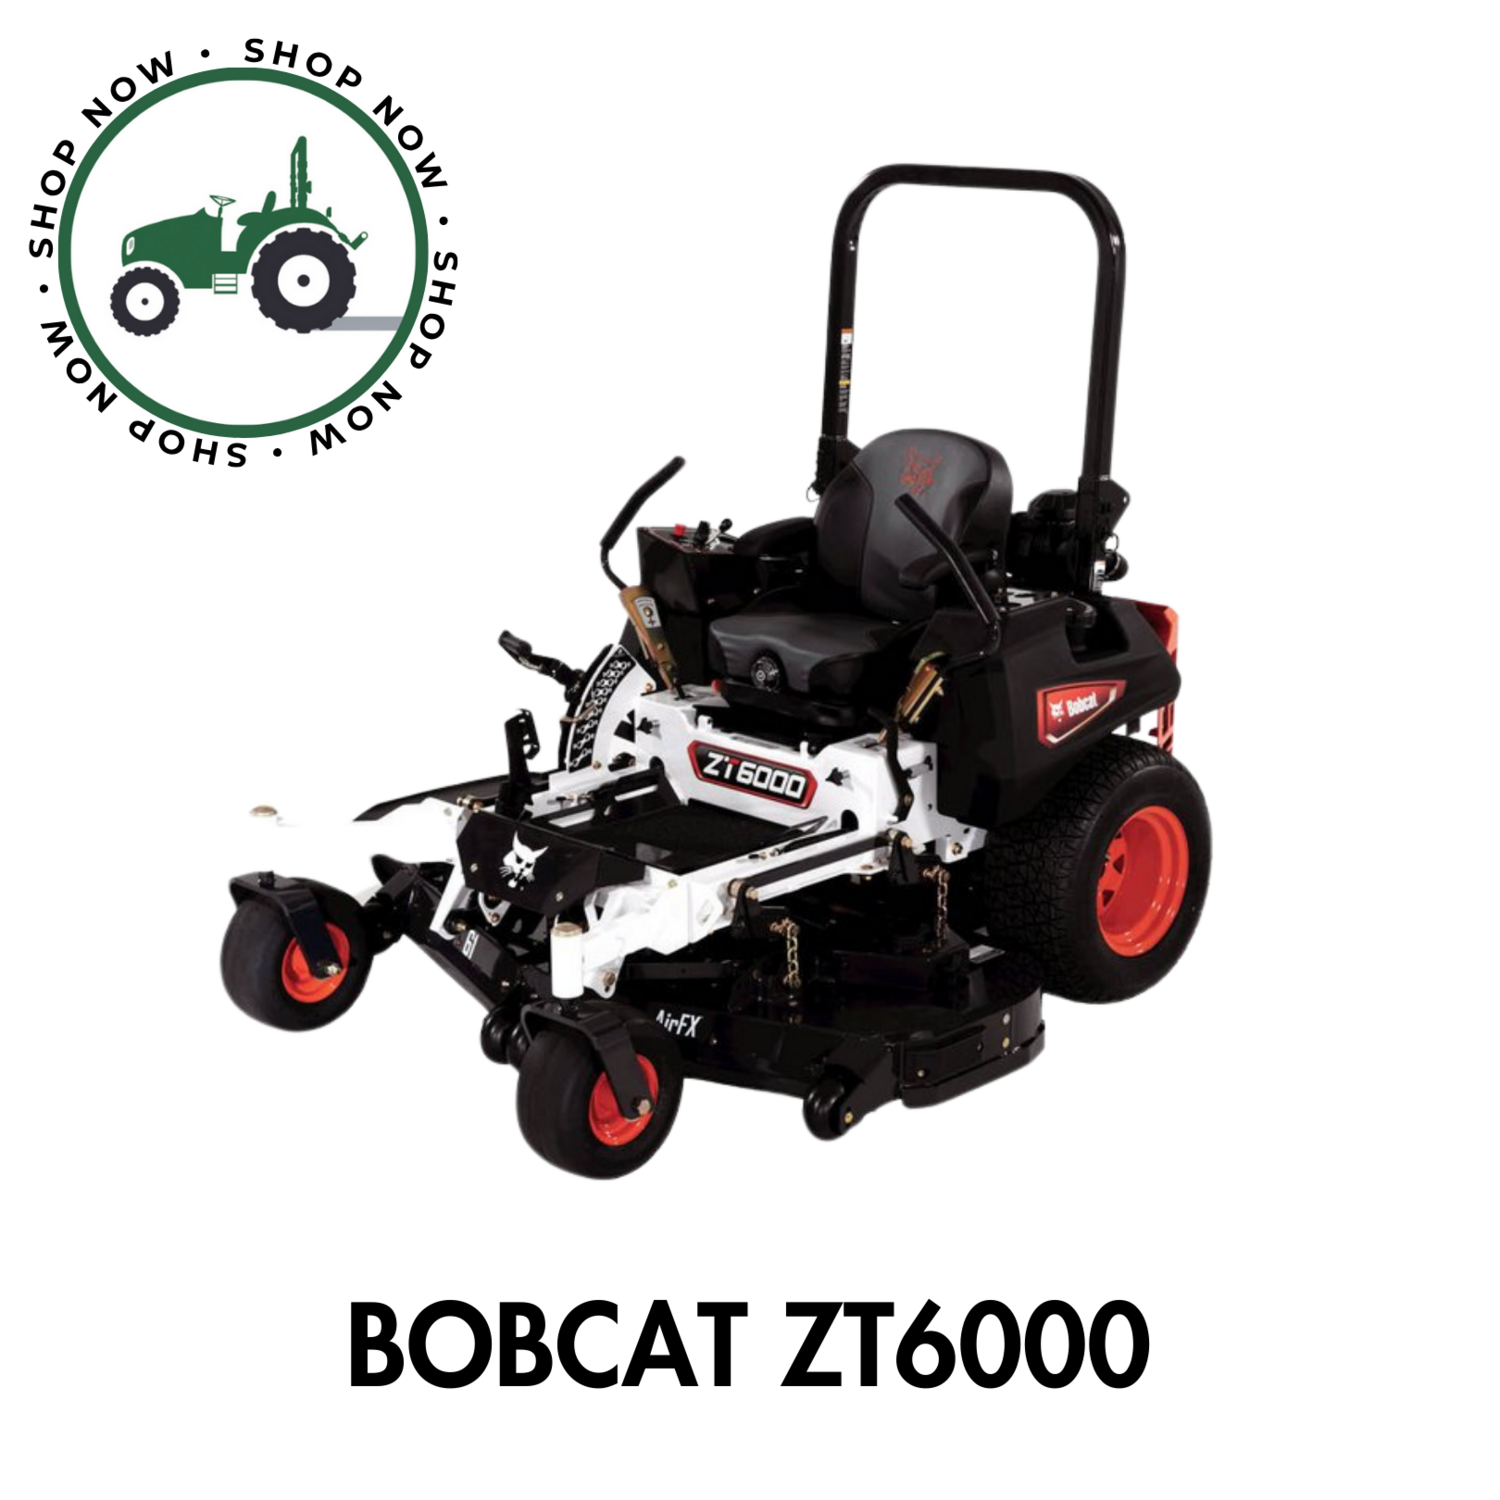 Bobcat ZT6000 Commercial Zero Turn Mower 52"